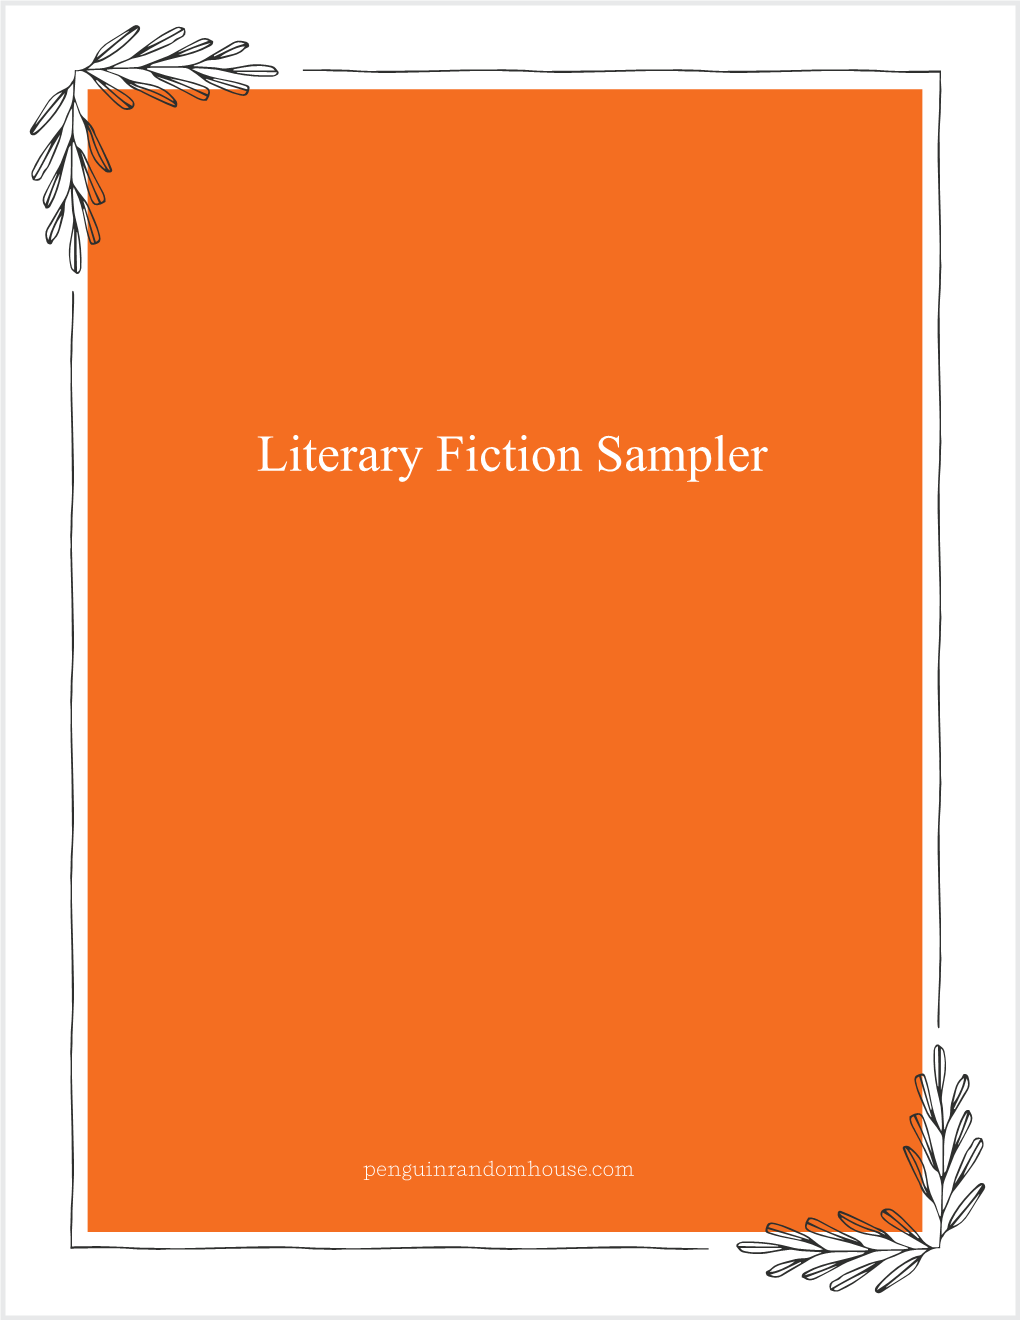 Literary Fiction Sampler